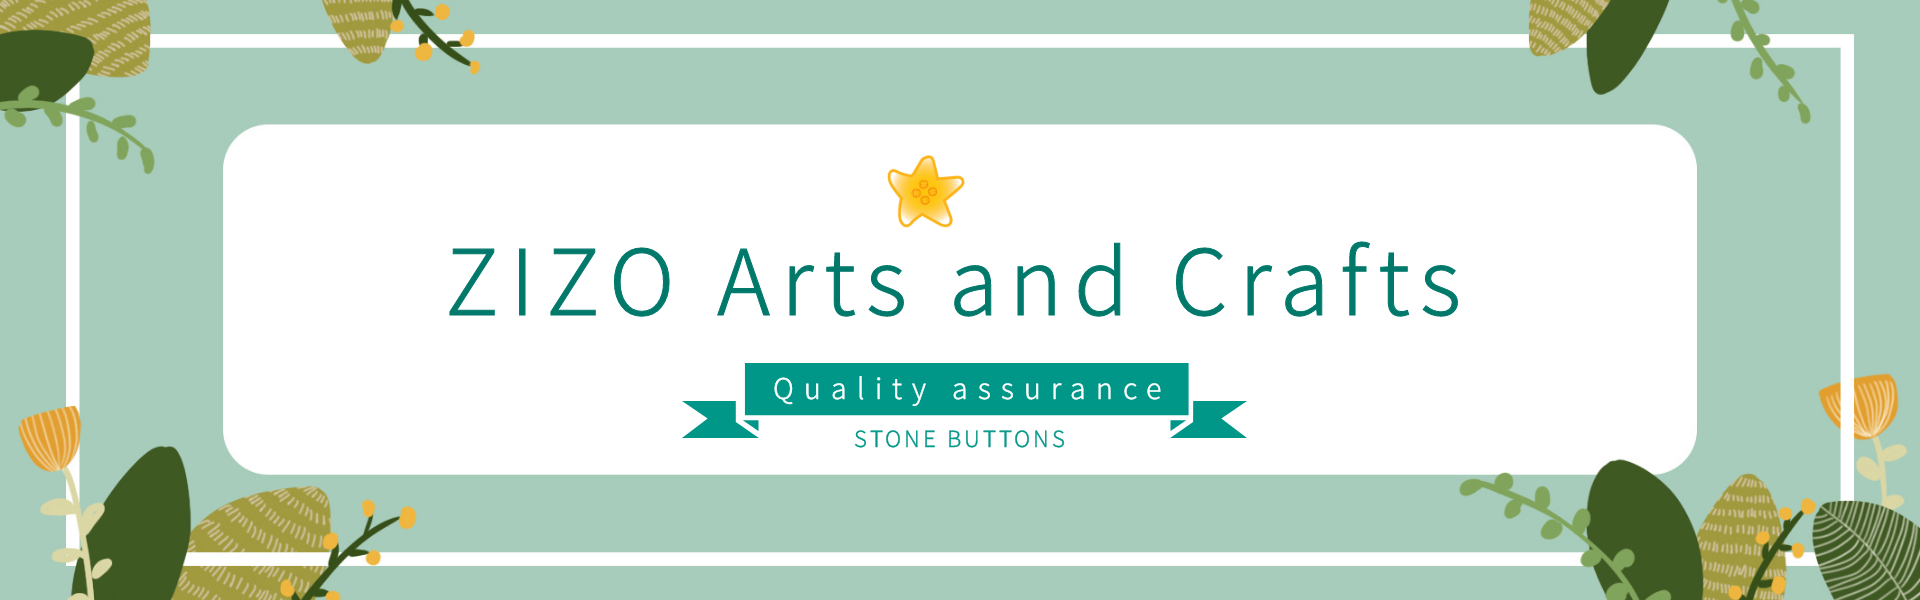 πετράδια,πέτρινα κουμπιά,νεφρίτη,Dongguan ZIZO Arts and Crafts Co. LTD